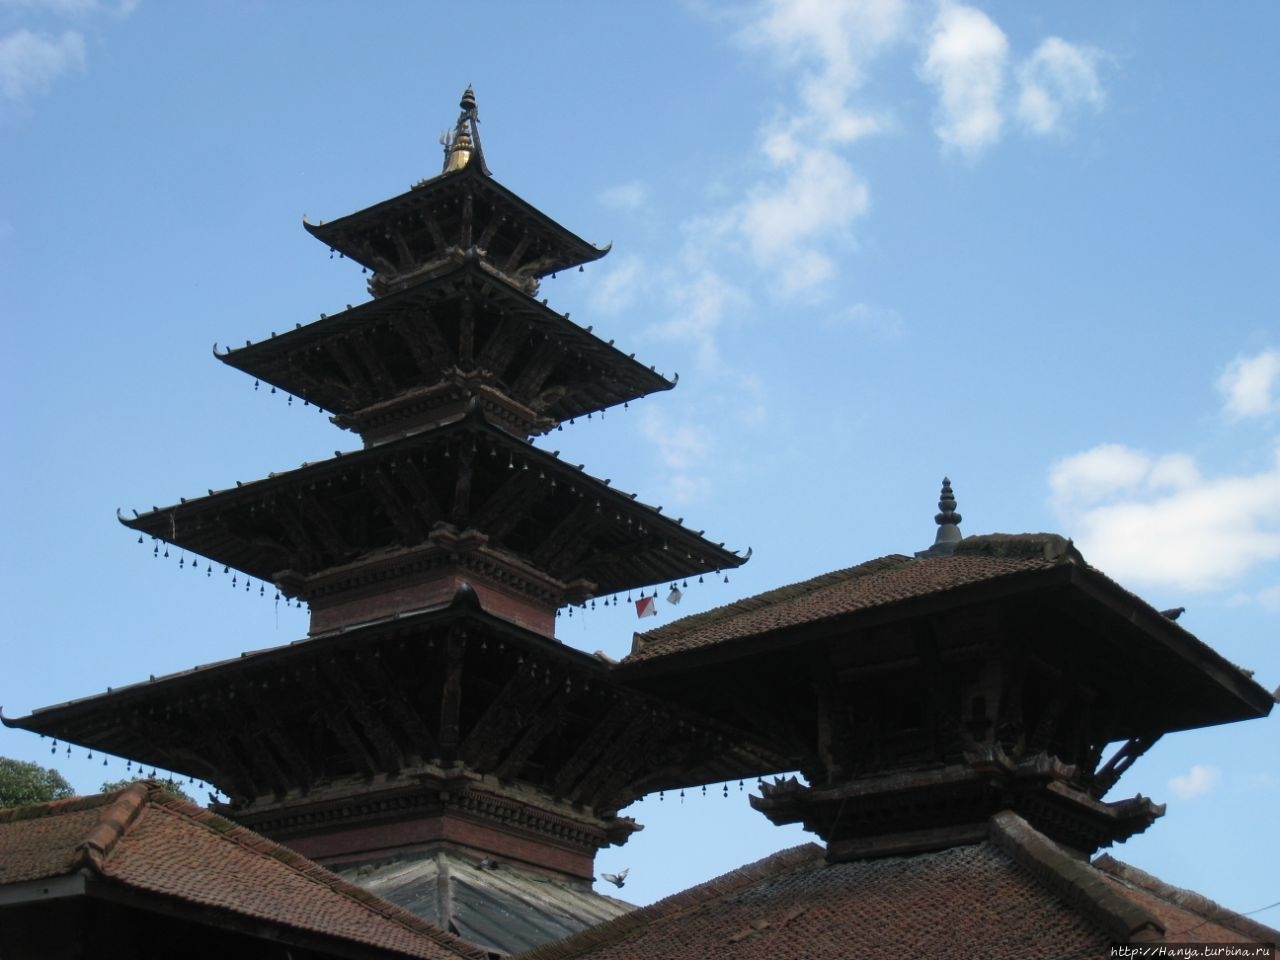 Пятиярусная пагода Sarbeswor Mahadev в храмовом комплексе Kumbheshwor